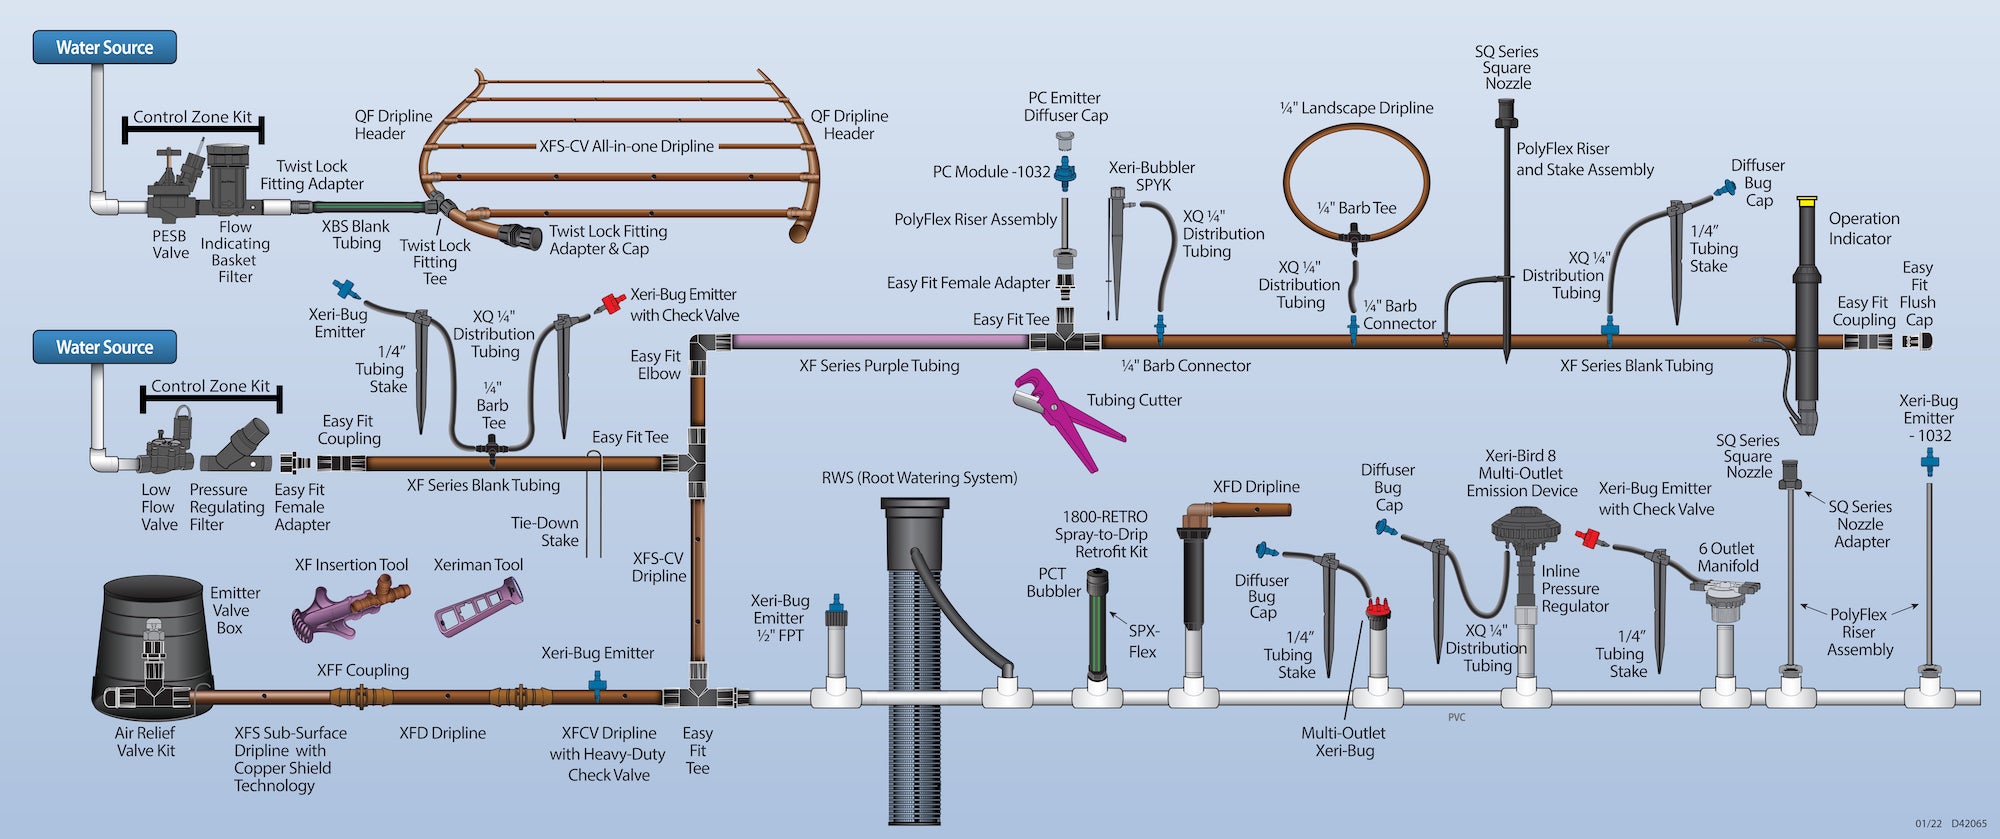 Sistema di irrigazione goccia a goccia sotterraneo - Raindrip